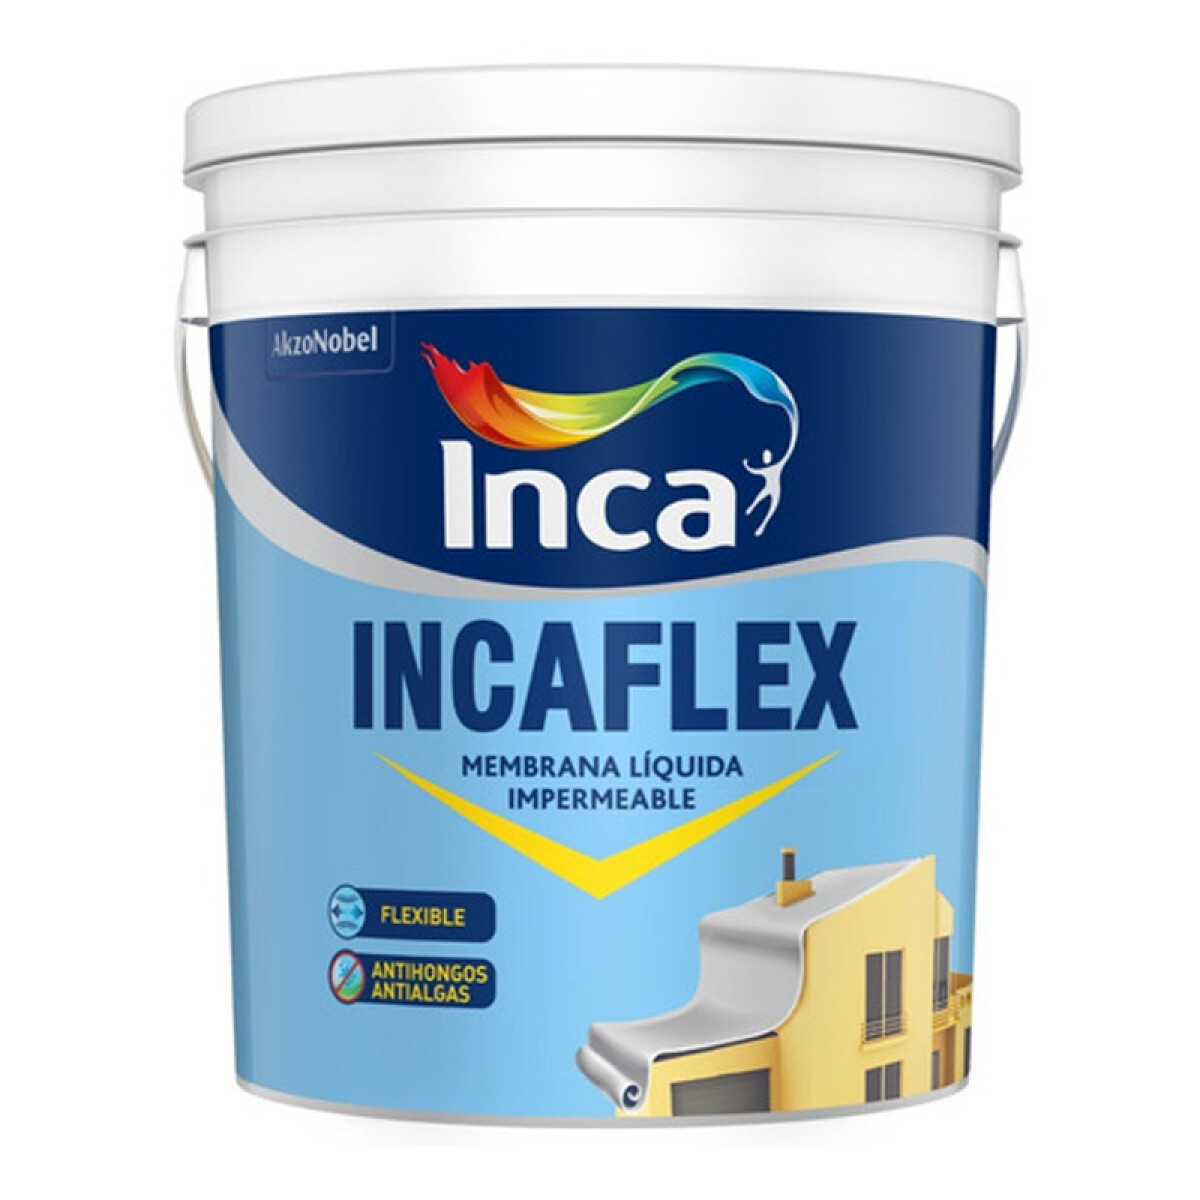 INCAFLEX 20L PROMO INCA 